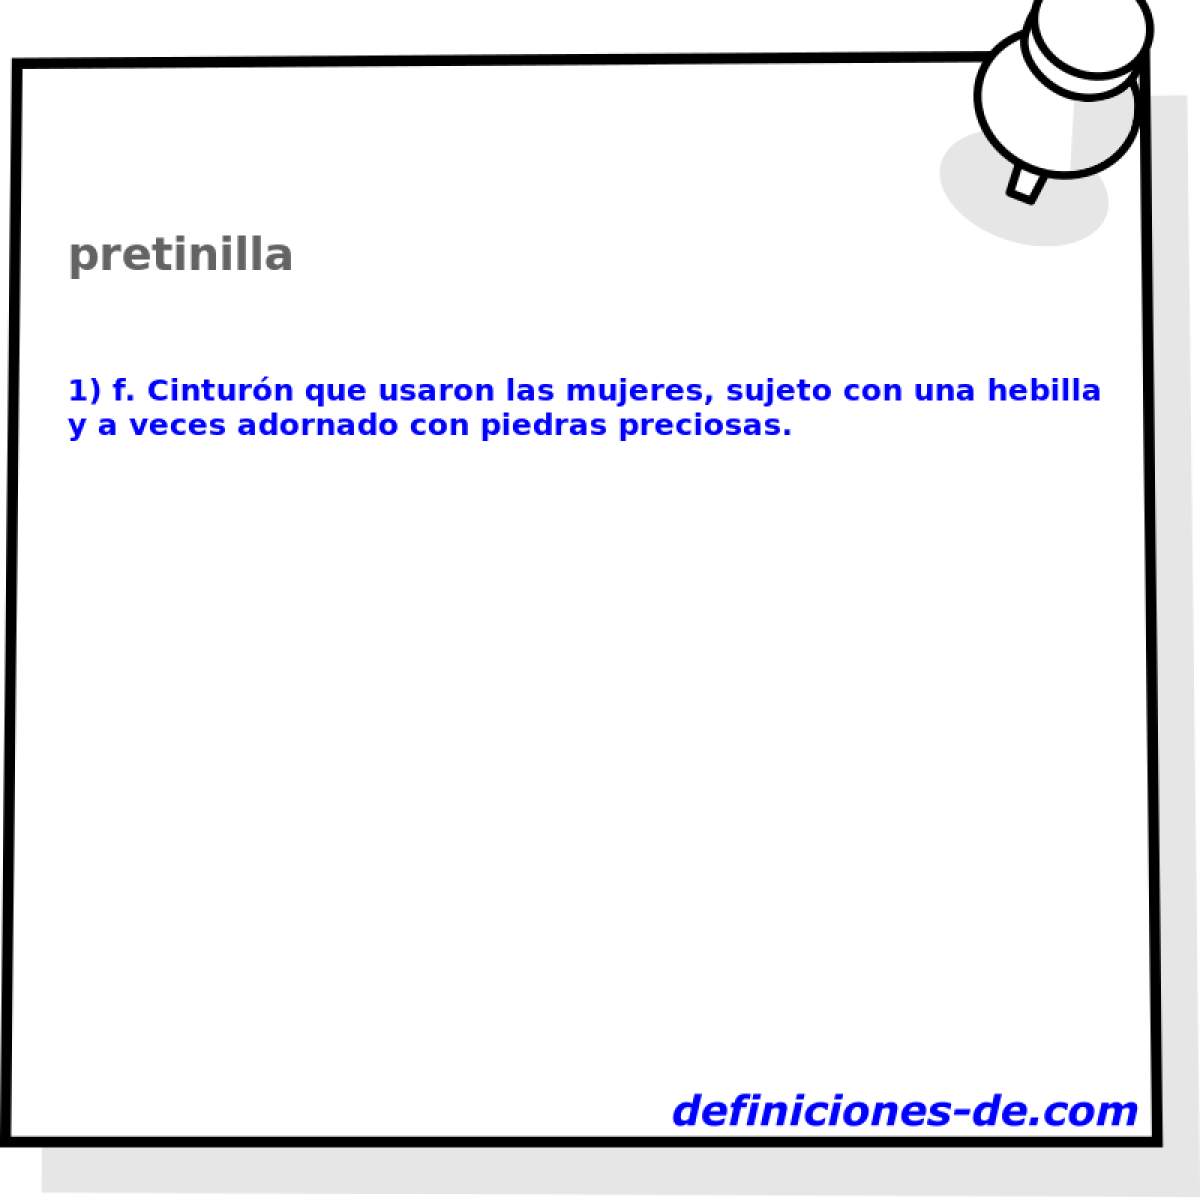 pretinilla 